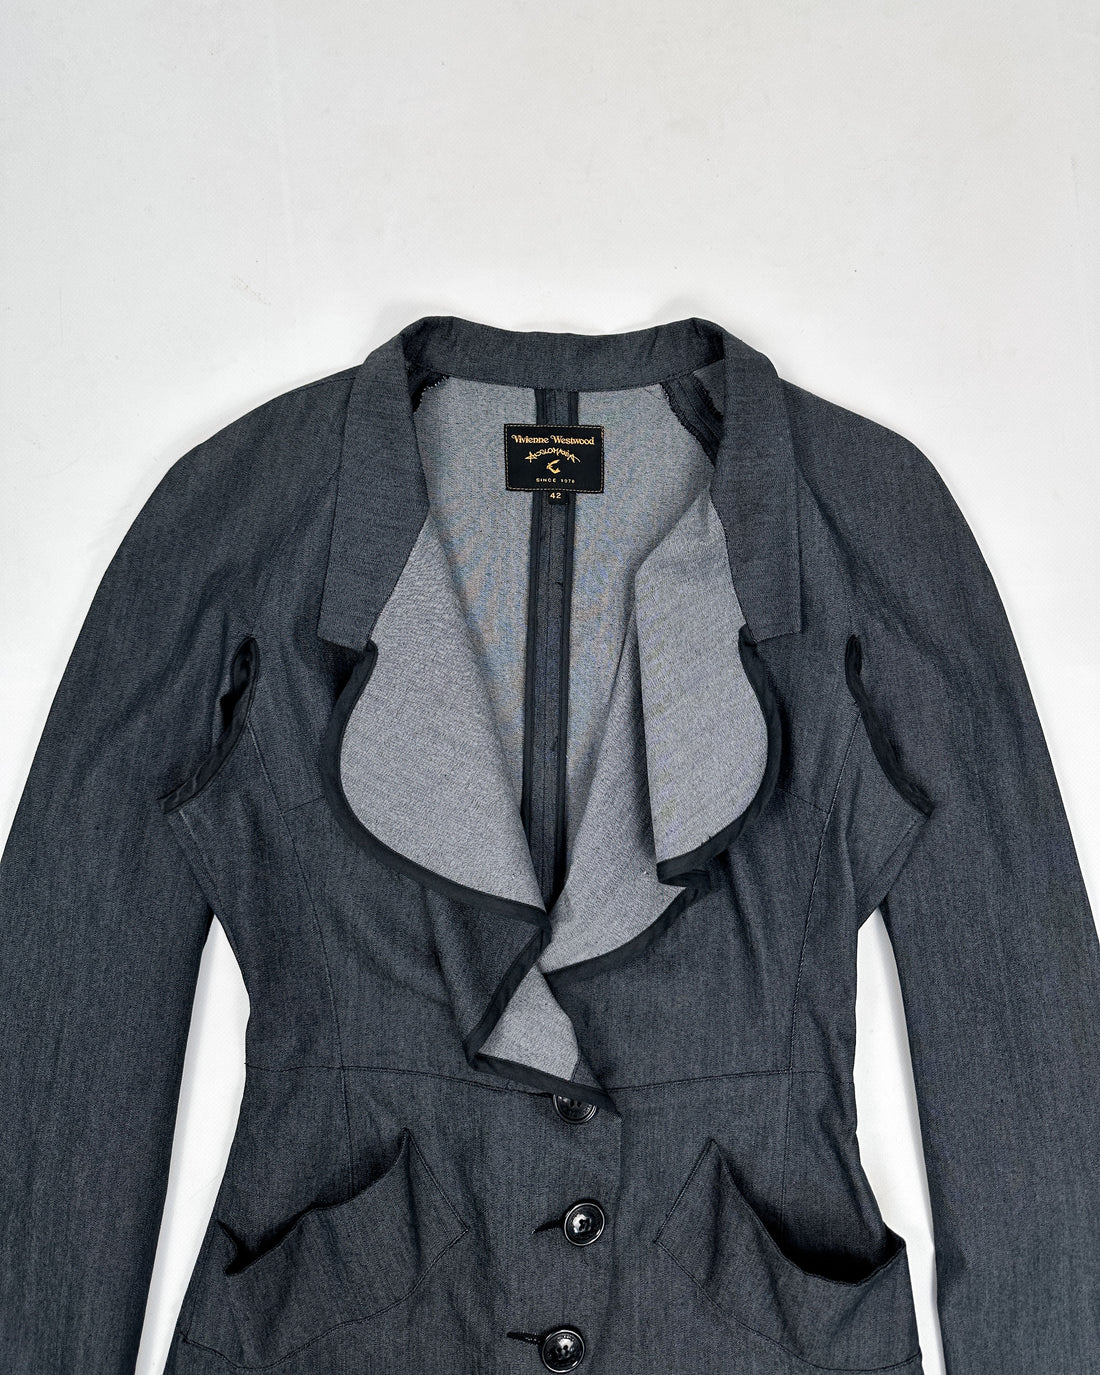 Vivienne Westwood Deconstructed Grey Blazer 1990's